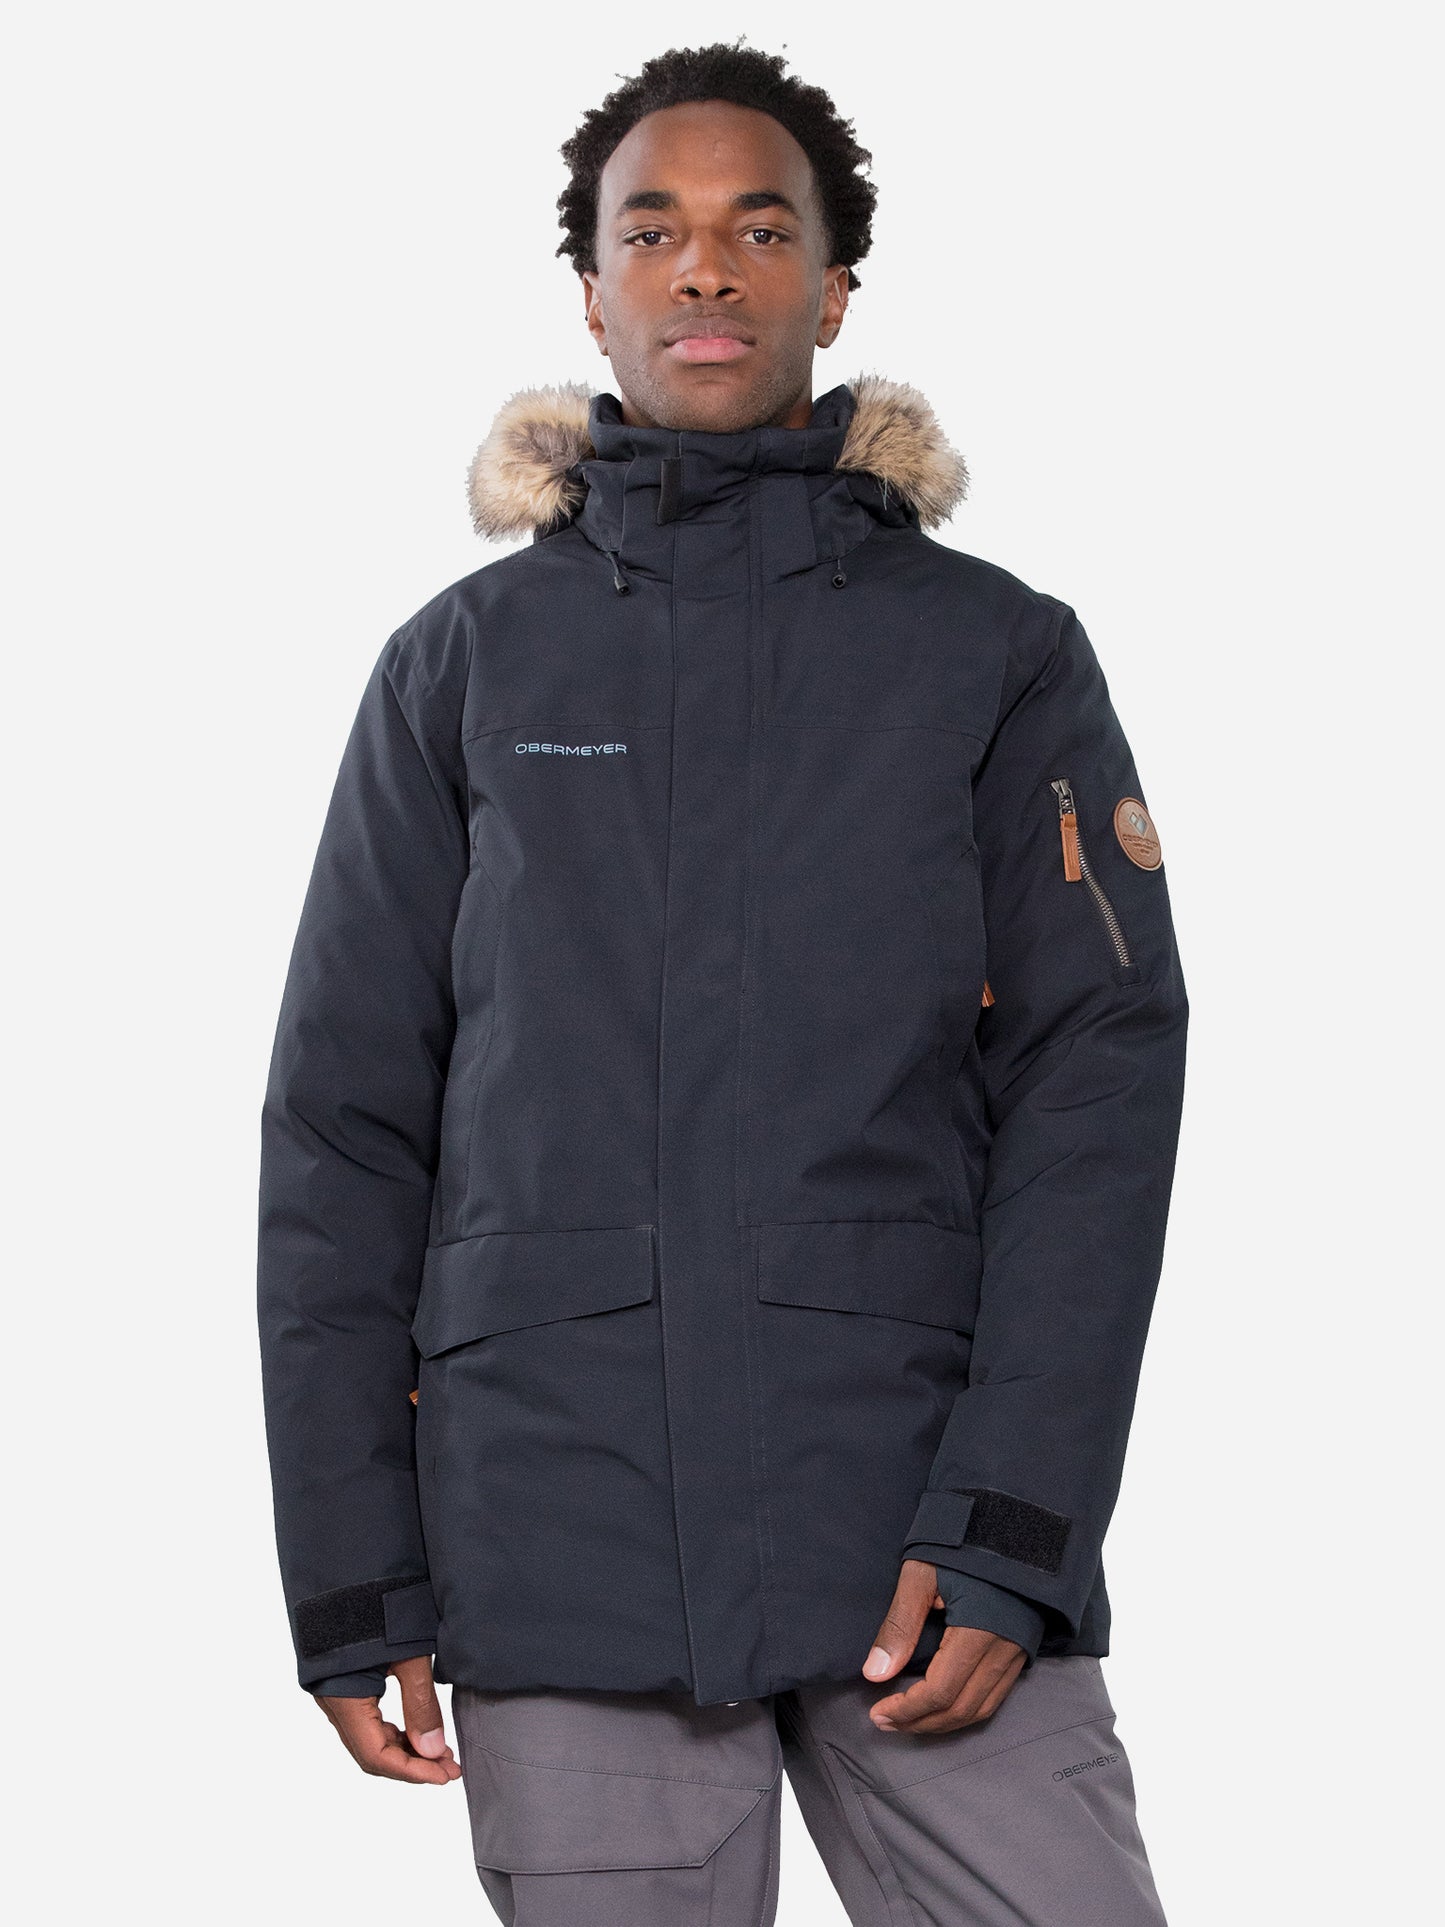 Obermeyer Men's Ridgeline Jacket w/ Faux Fur